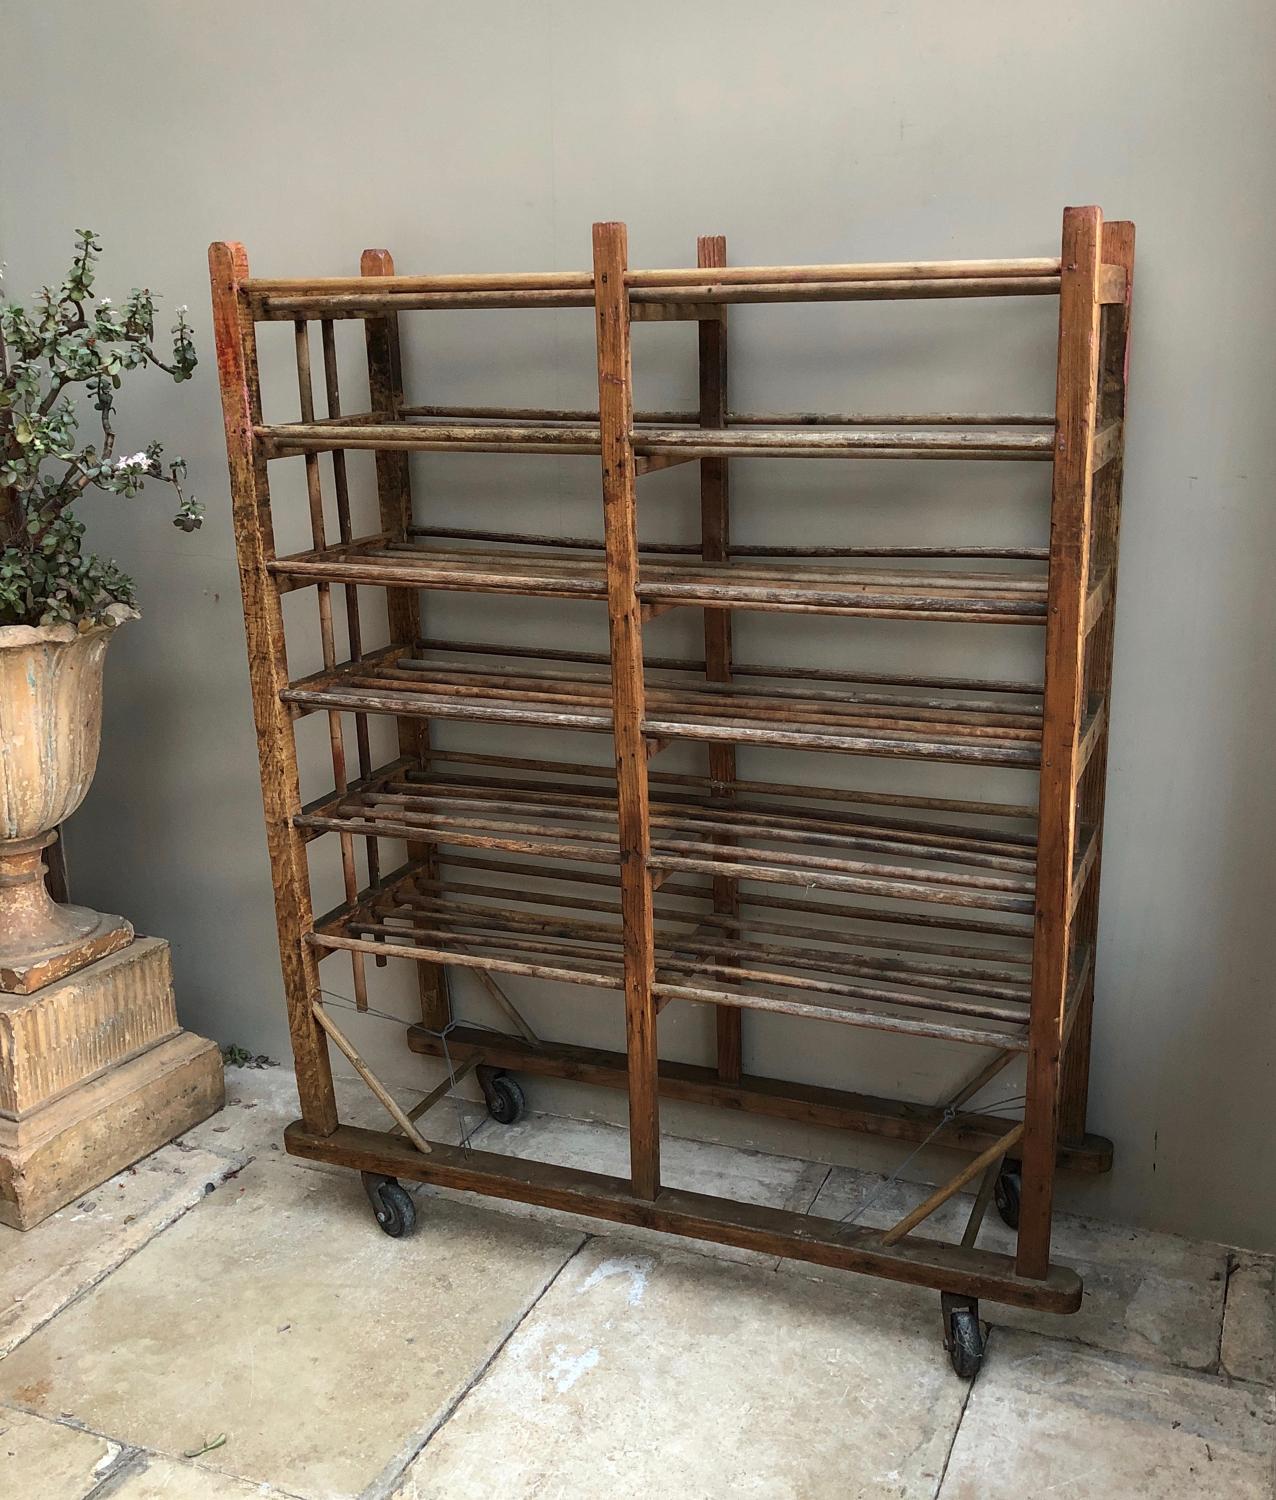 Antique Pine Shoe Rack - Linen Rack - Shelves - On Castors